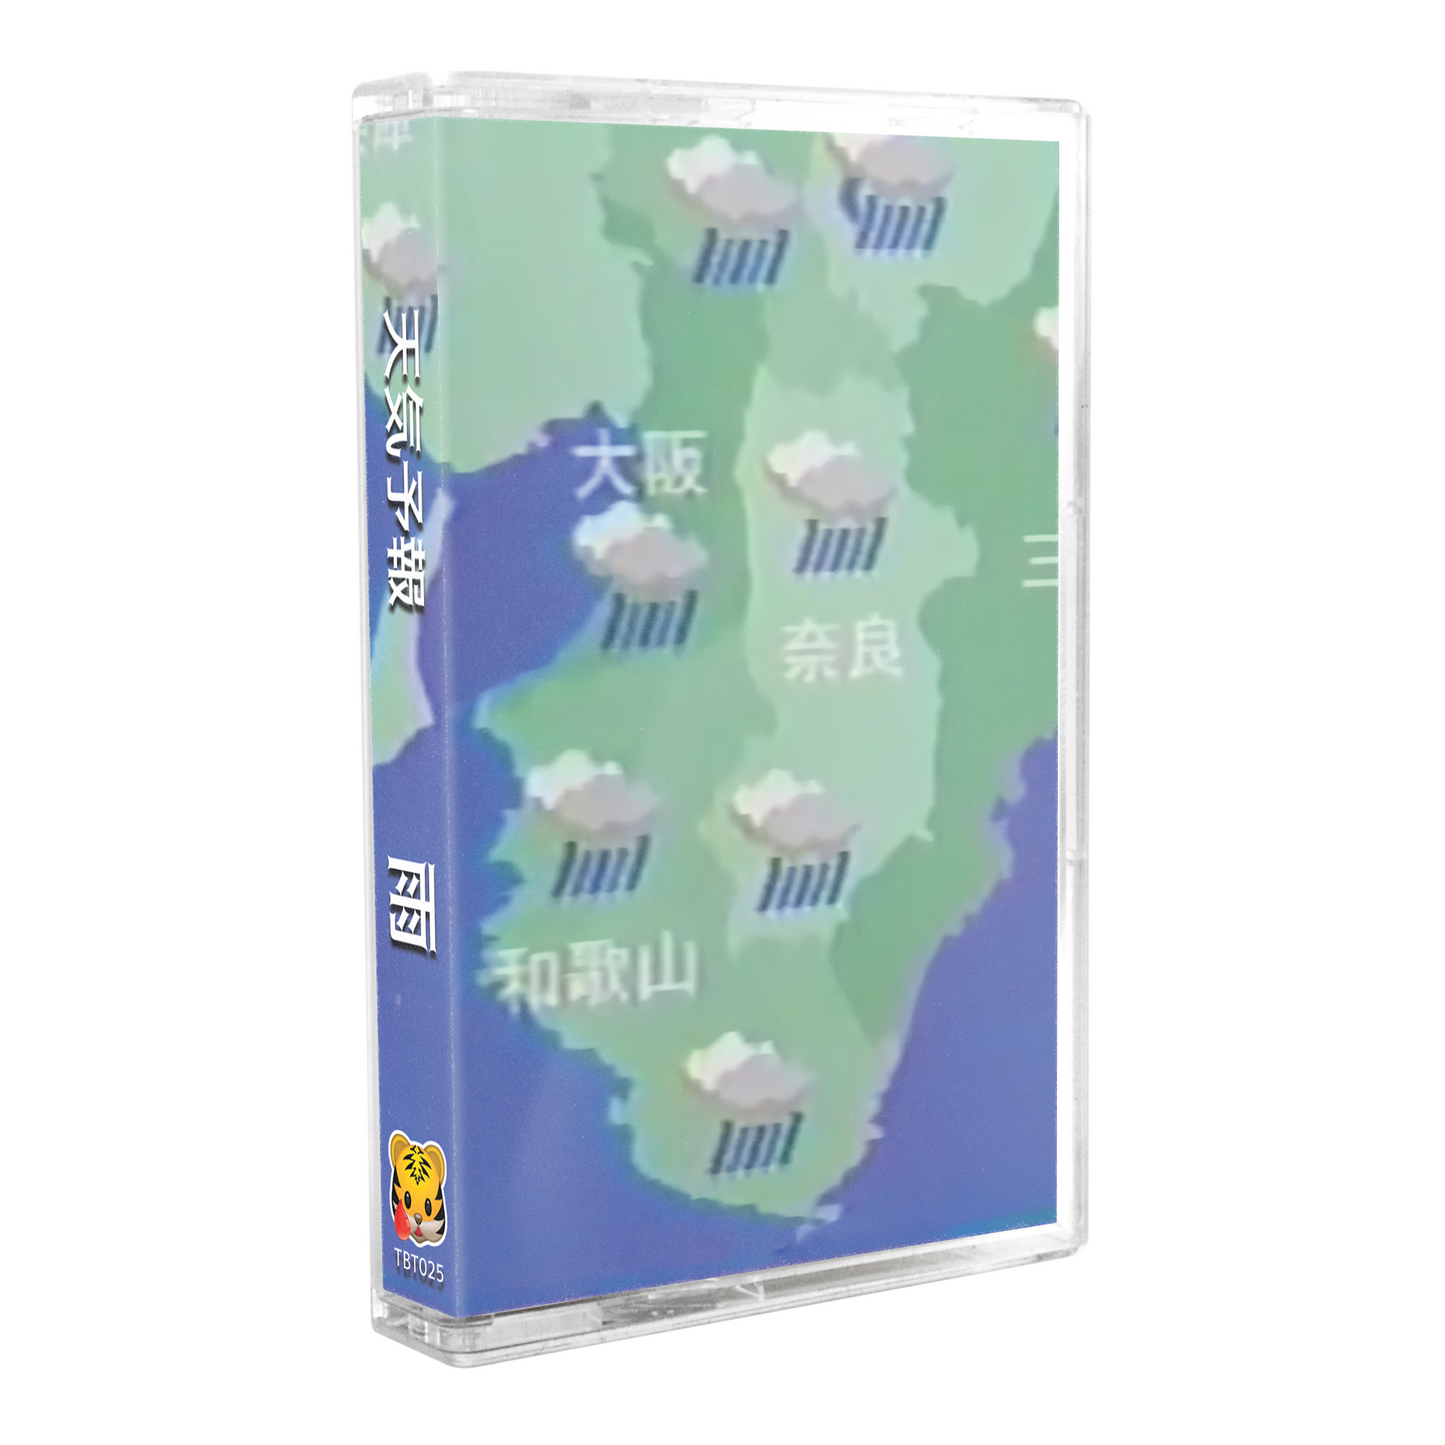 天気予報 - "雨" Limited Edition Cassette Tape